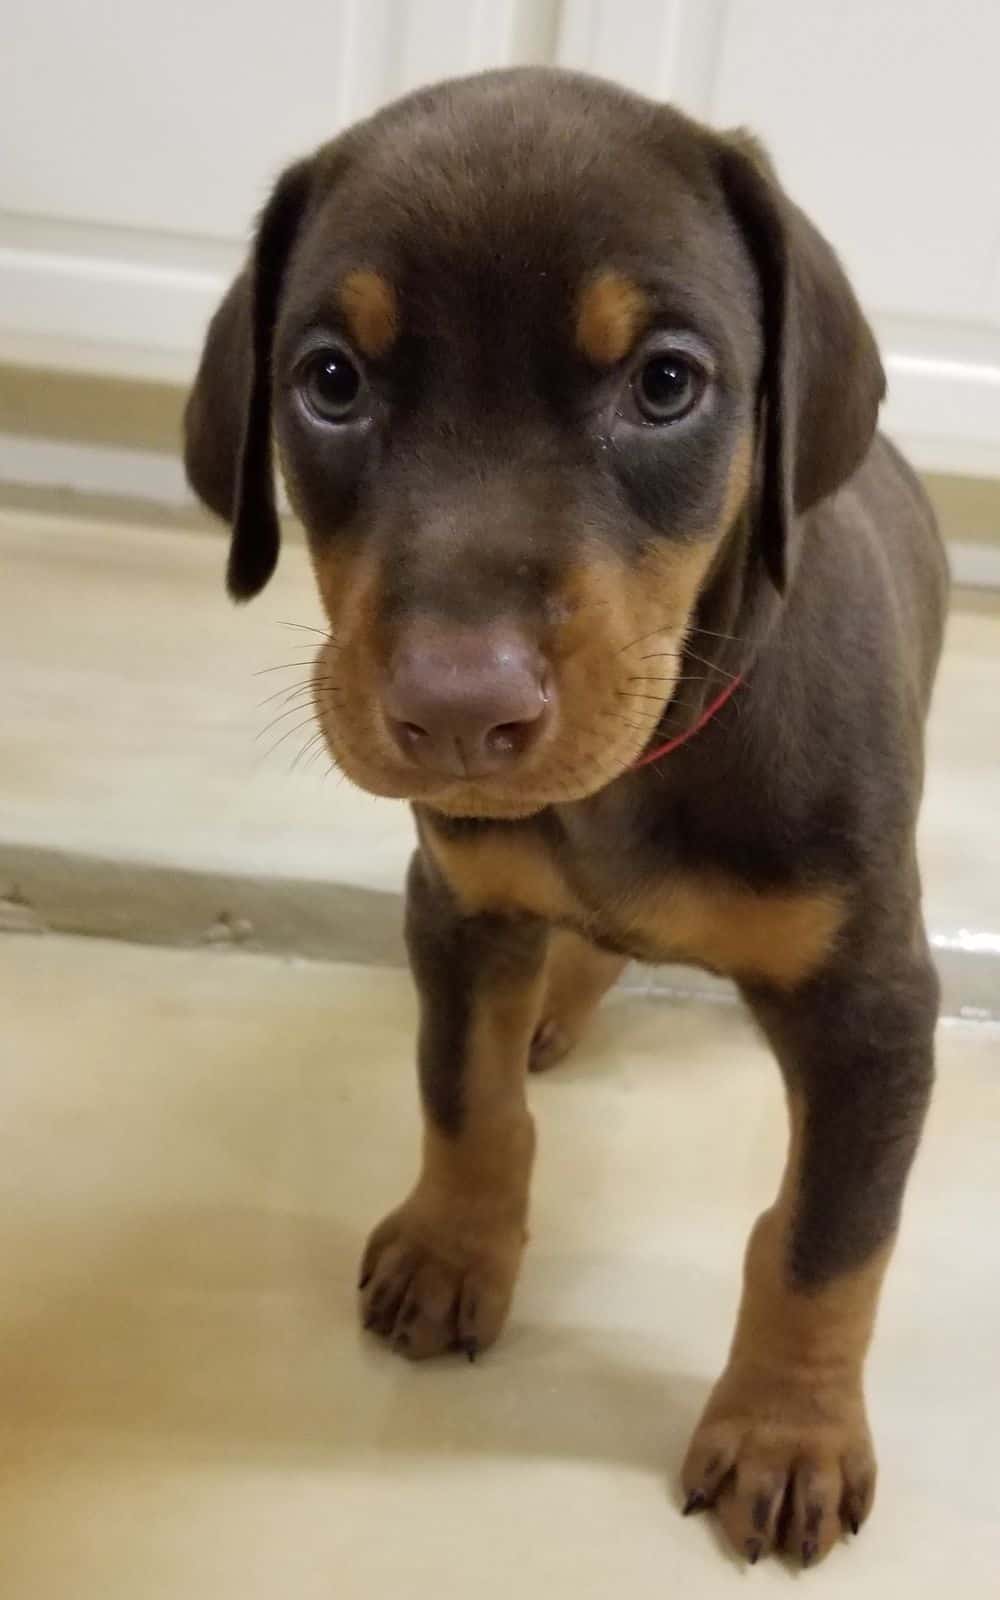 5-1/2 week old Doberman pinscher puppy